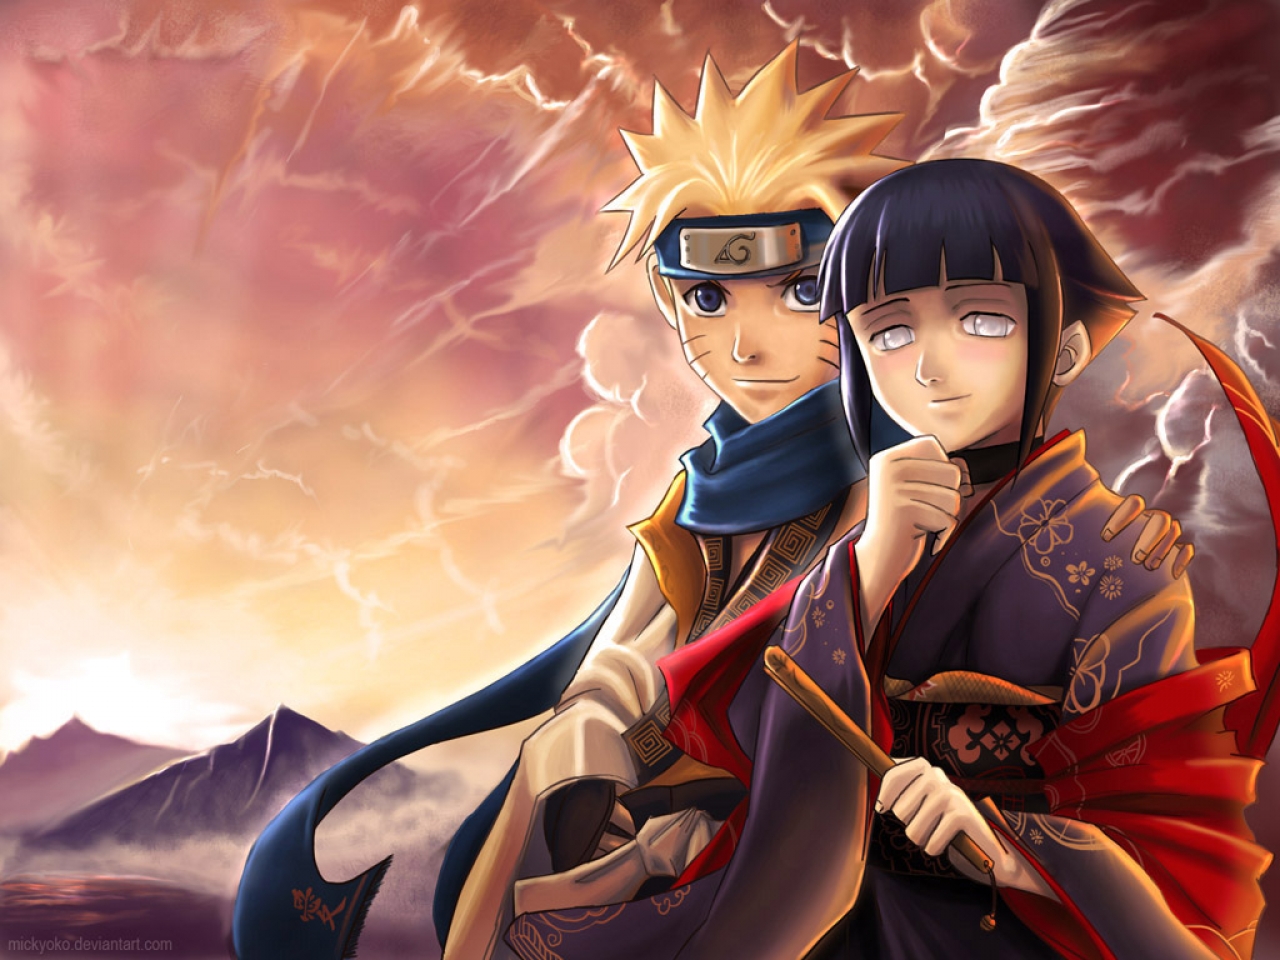  Naruto  and Hinata in Love Naruto  Shippuden Wallpapers  